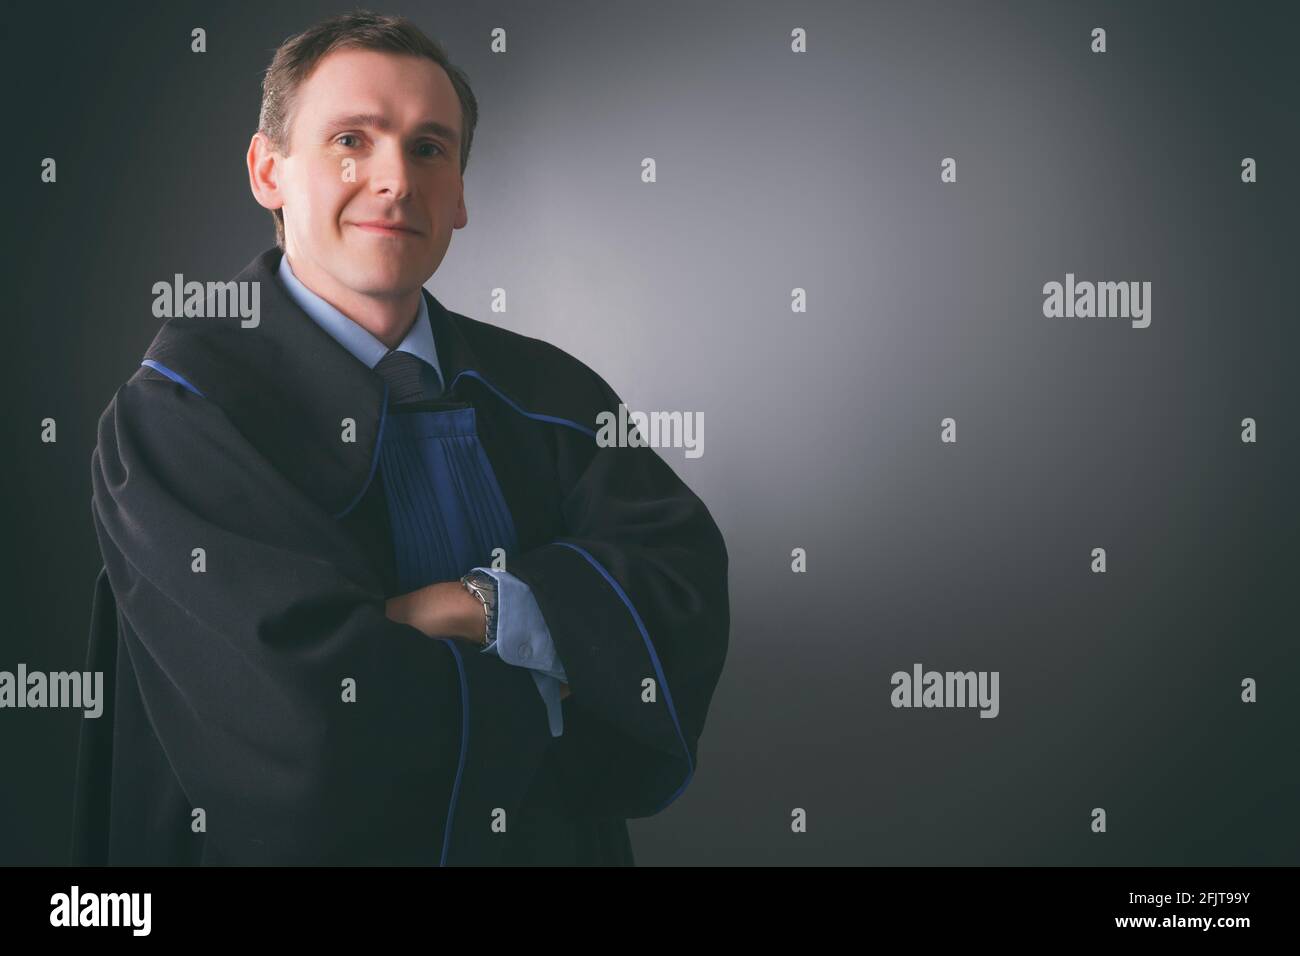 Un avvocato sorridente in una toga si alza con le braccia piegate su uno sfondo scuro Foto Stock